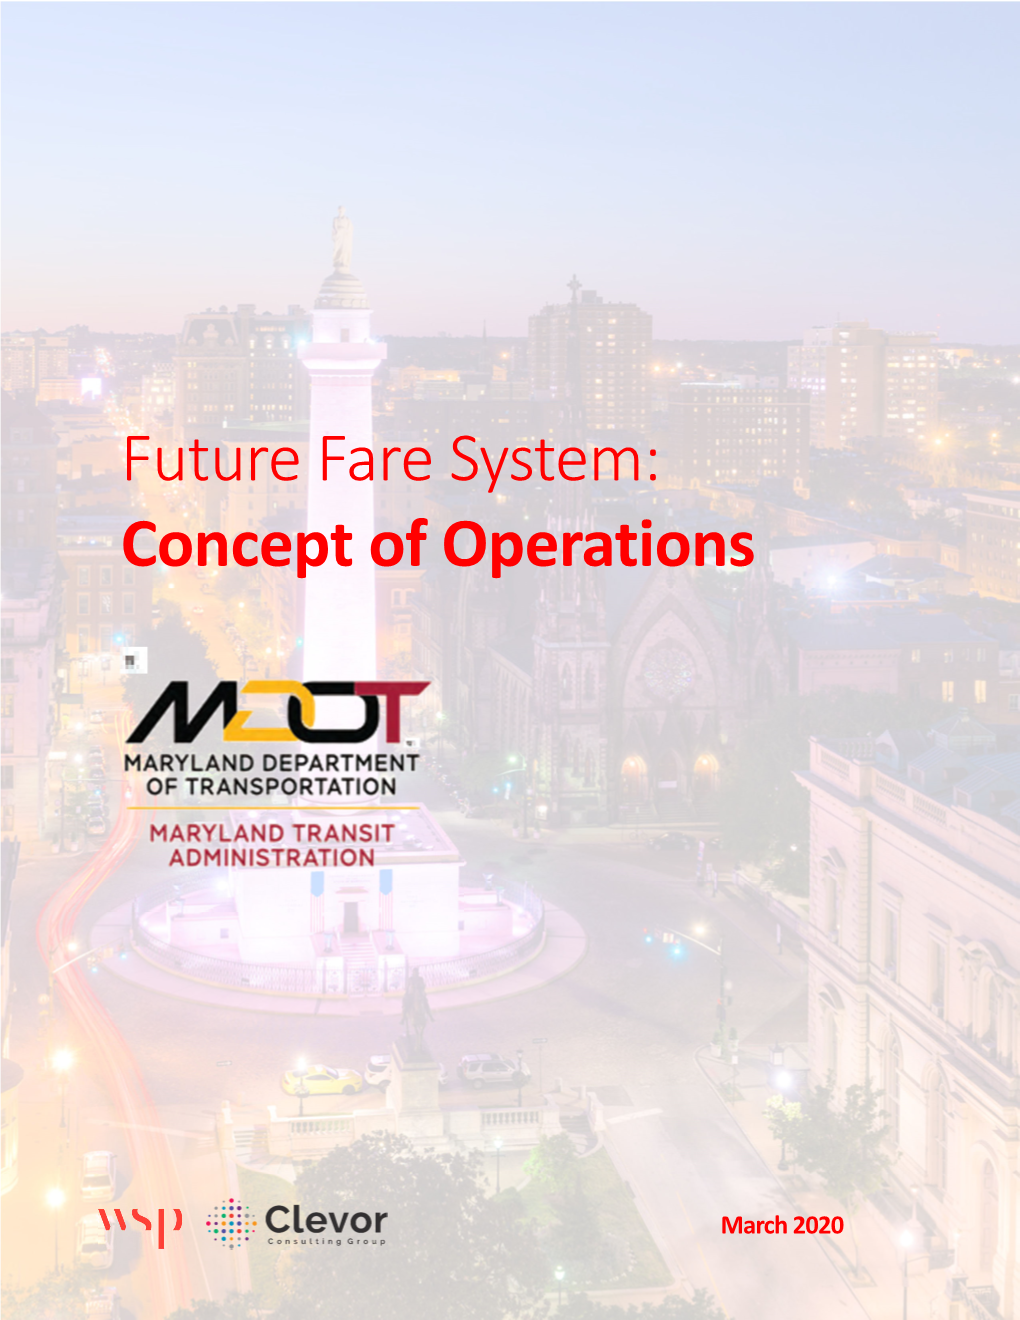 MDOT MTA Future Fare System Concept of Operations